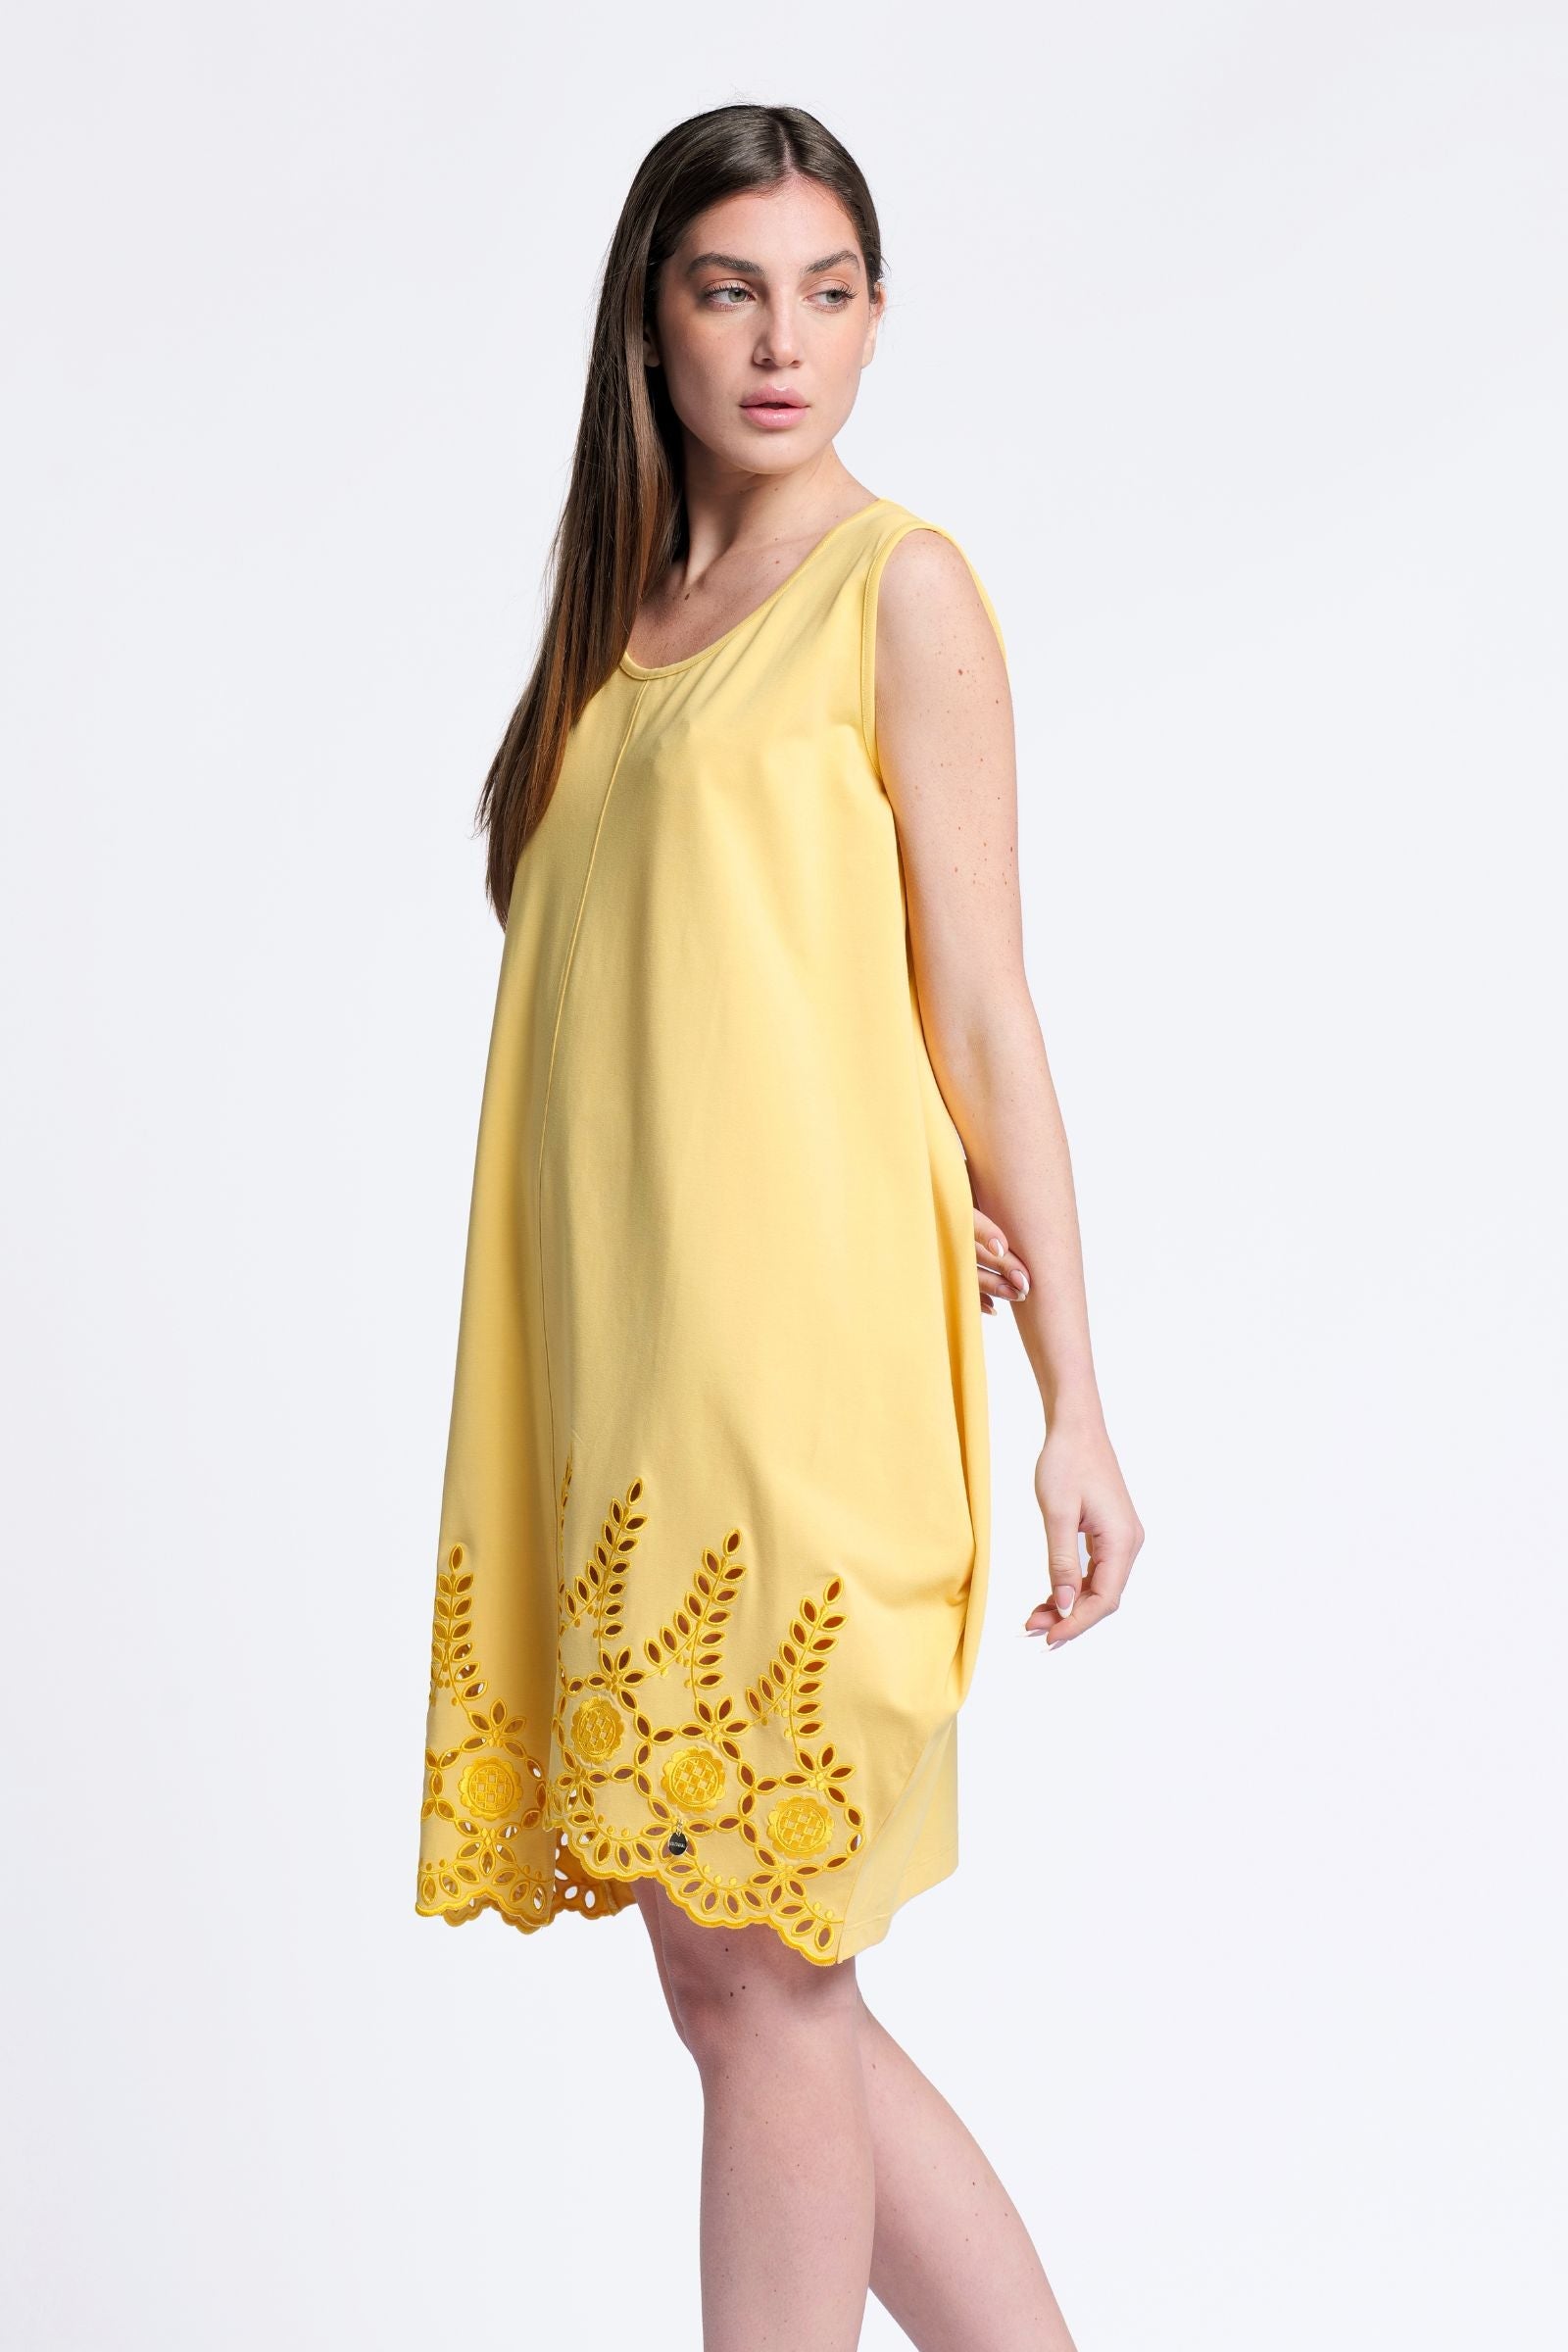 Vestido amarillo globo tirantes con bordado al tono Lolitas&L - lolitasyl.com